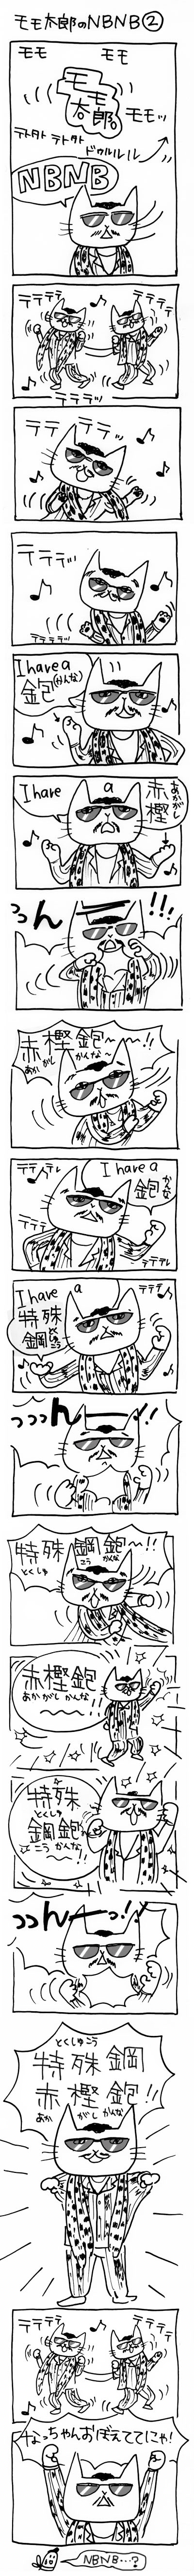 木工漫画　モモ太郎のNBNB ②　_tmb